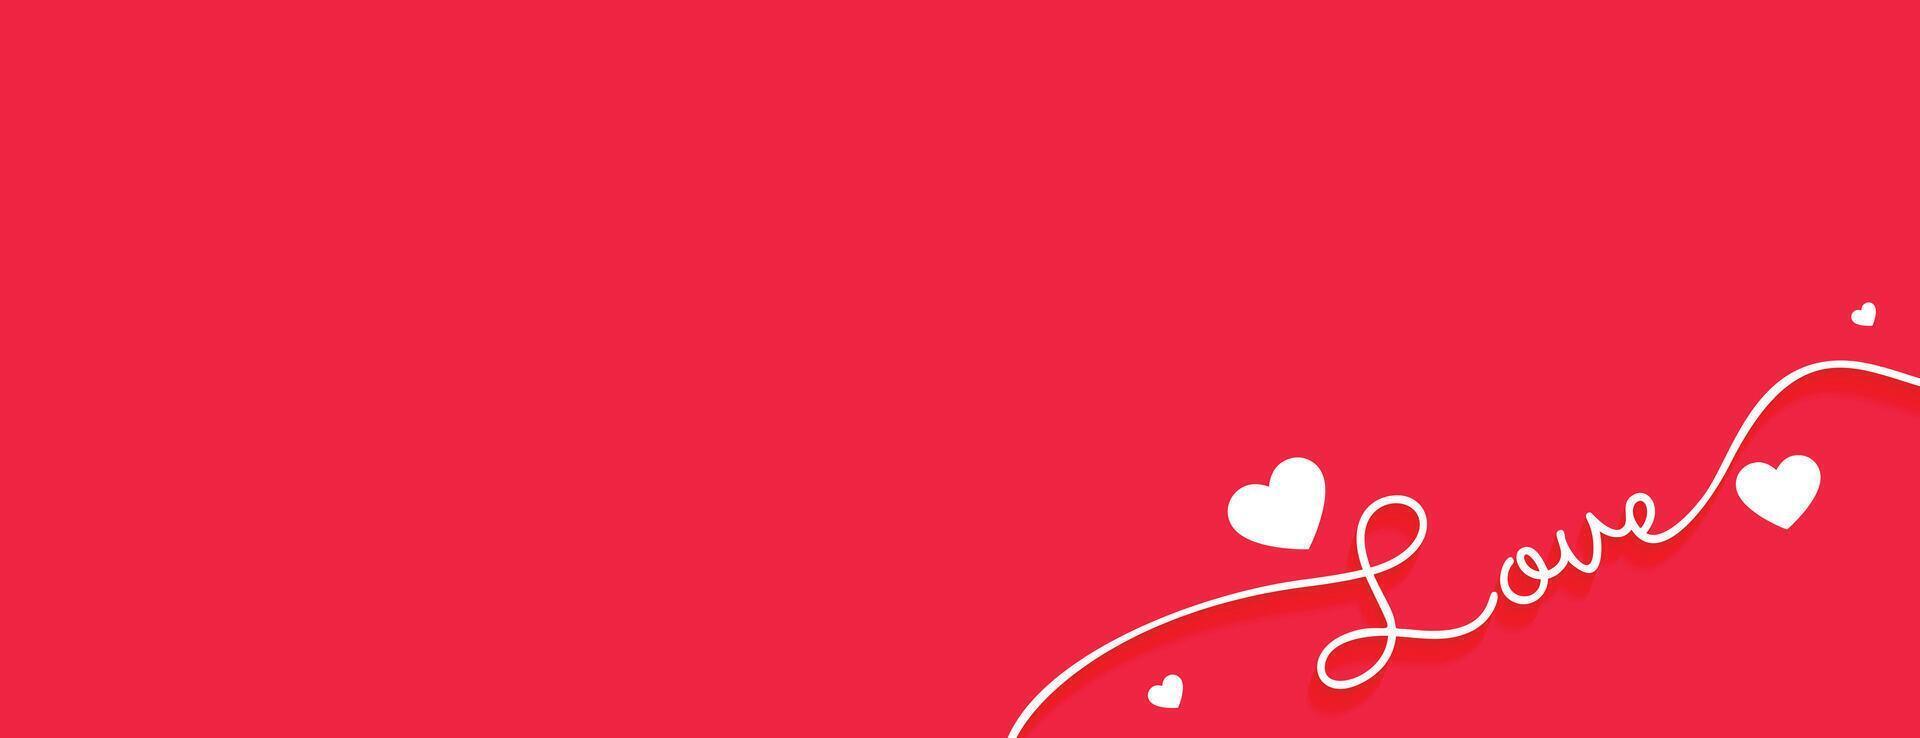 rena kärlek baner för valentines dag design vektor